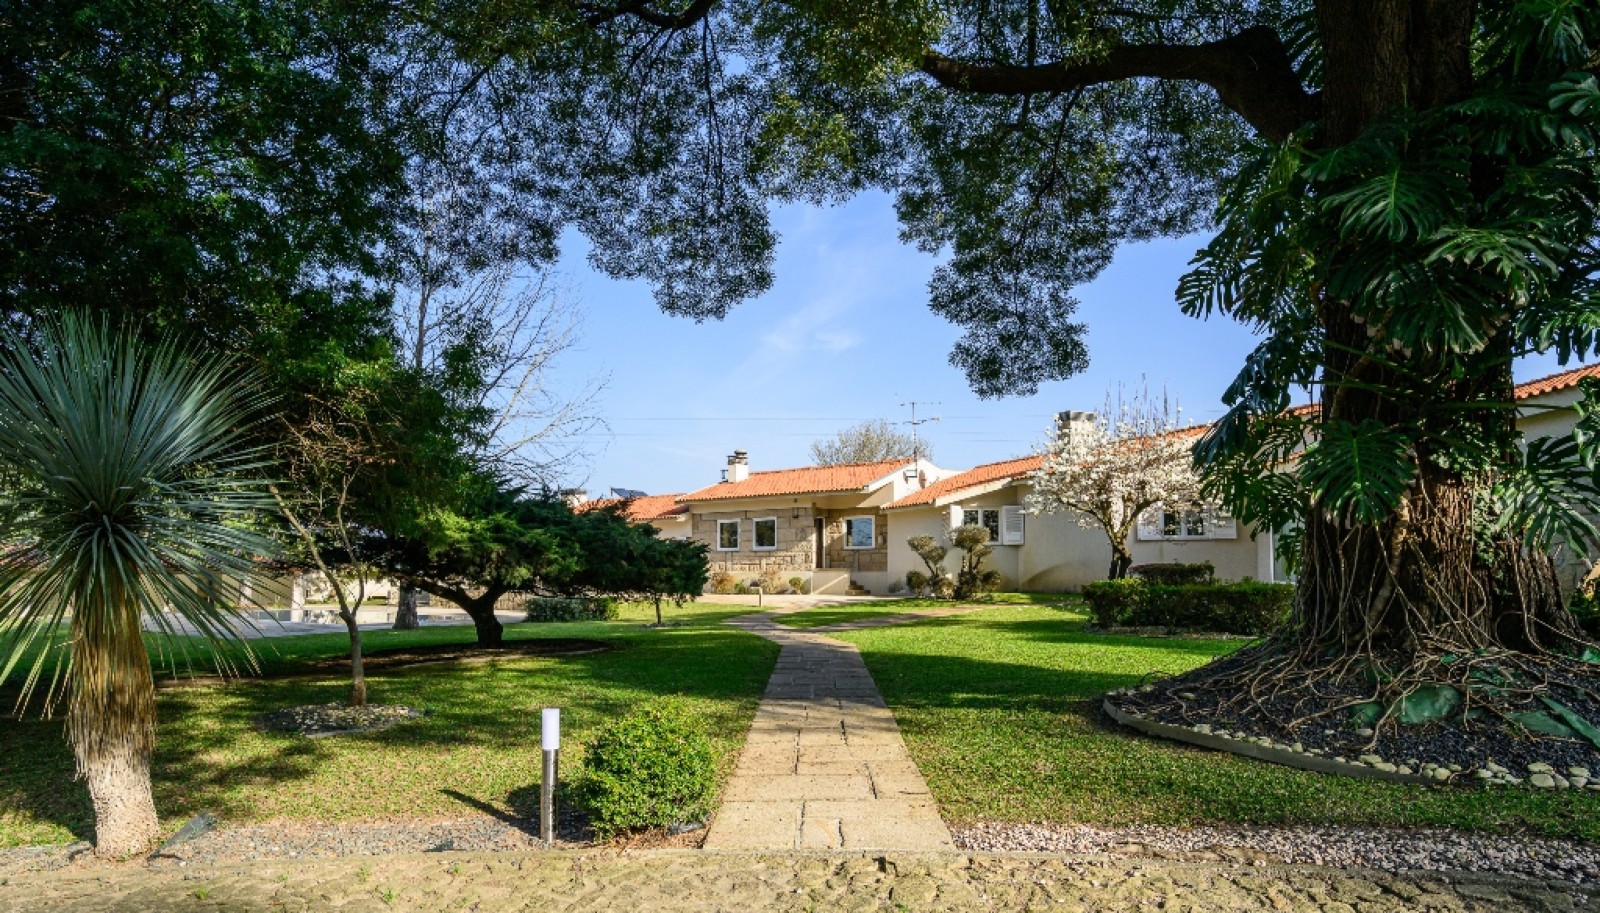 Moradia V5 com jardim e piscina, à venda, em Vila do Conde, Portugal_251098